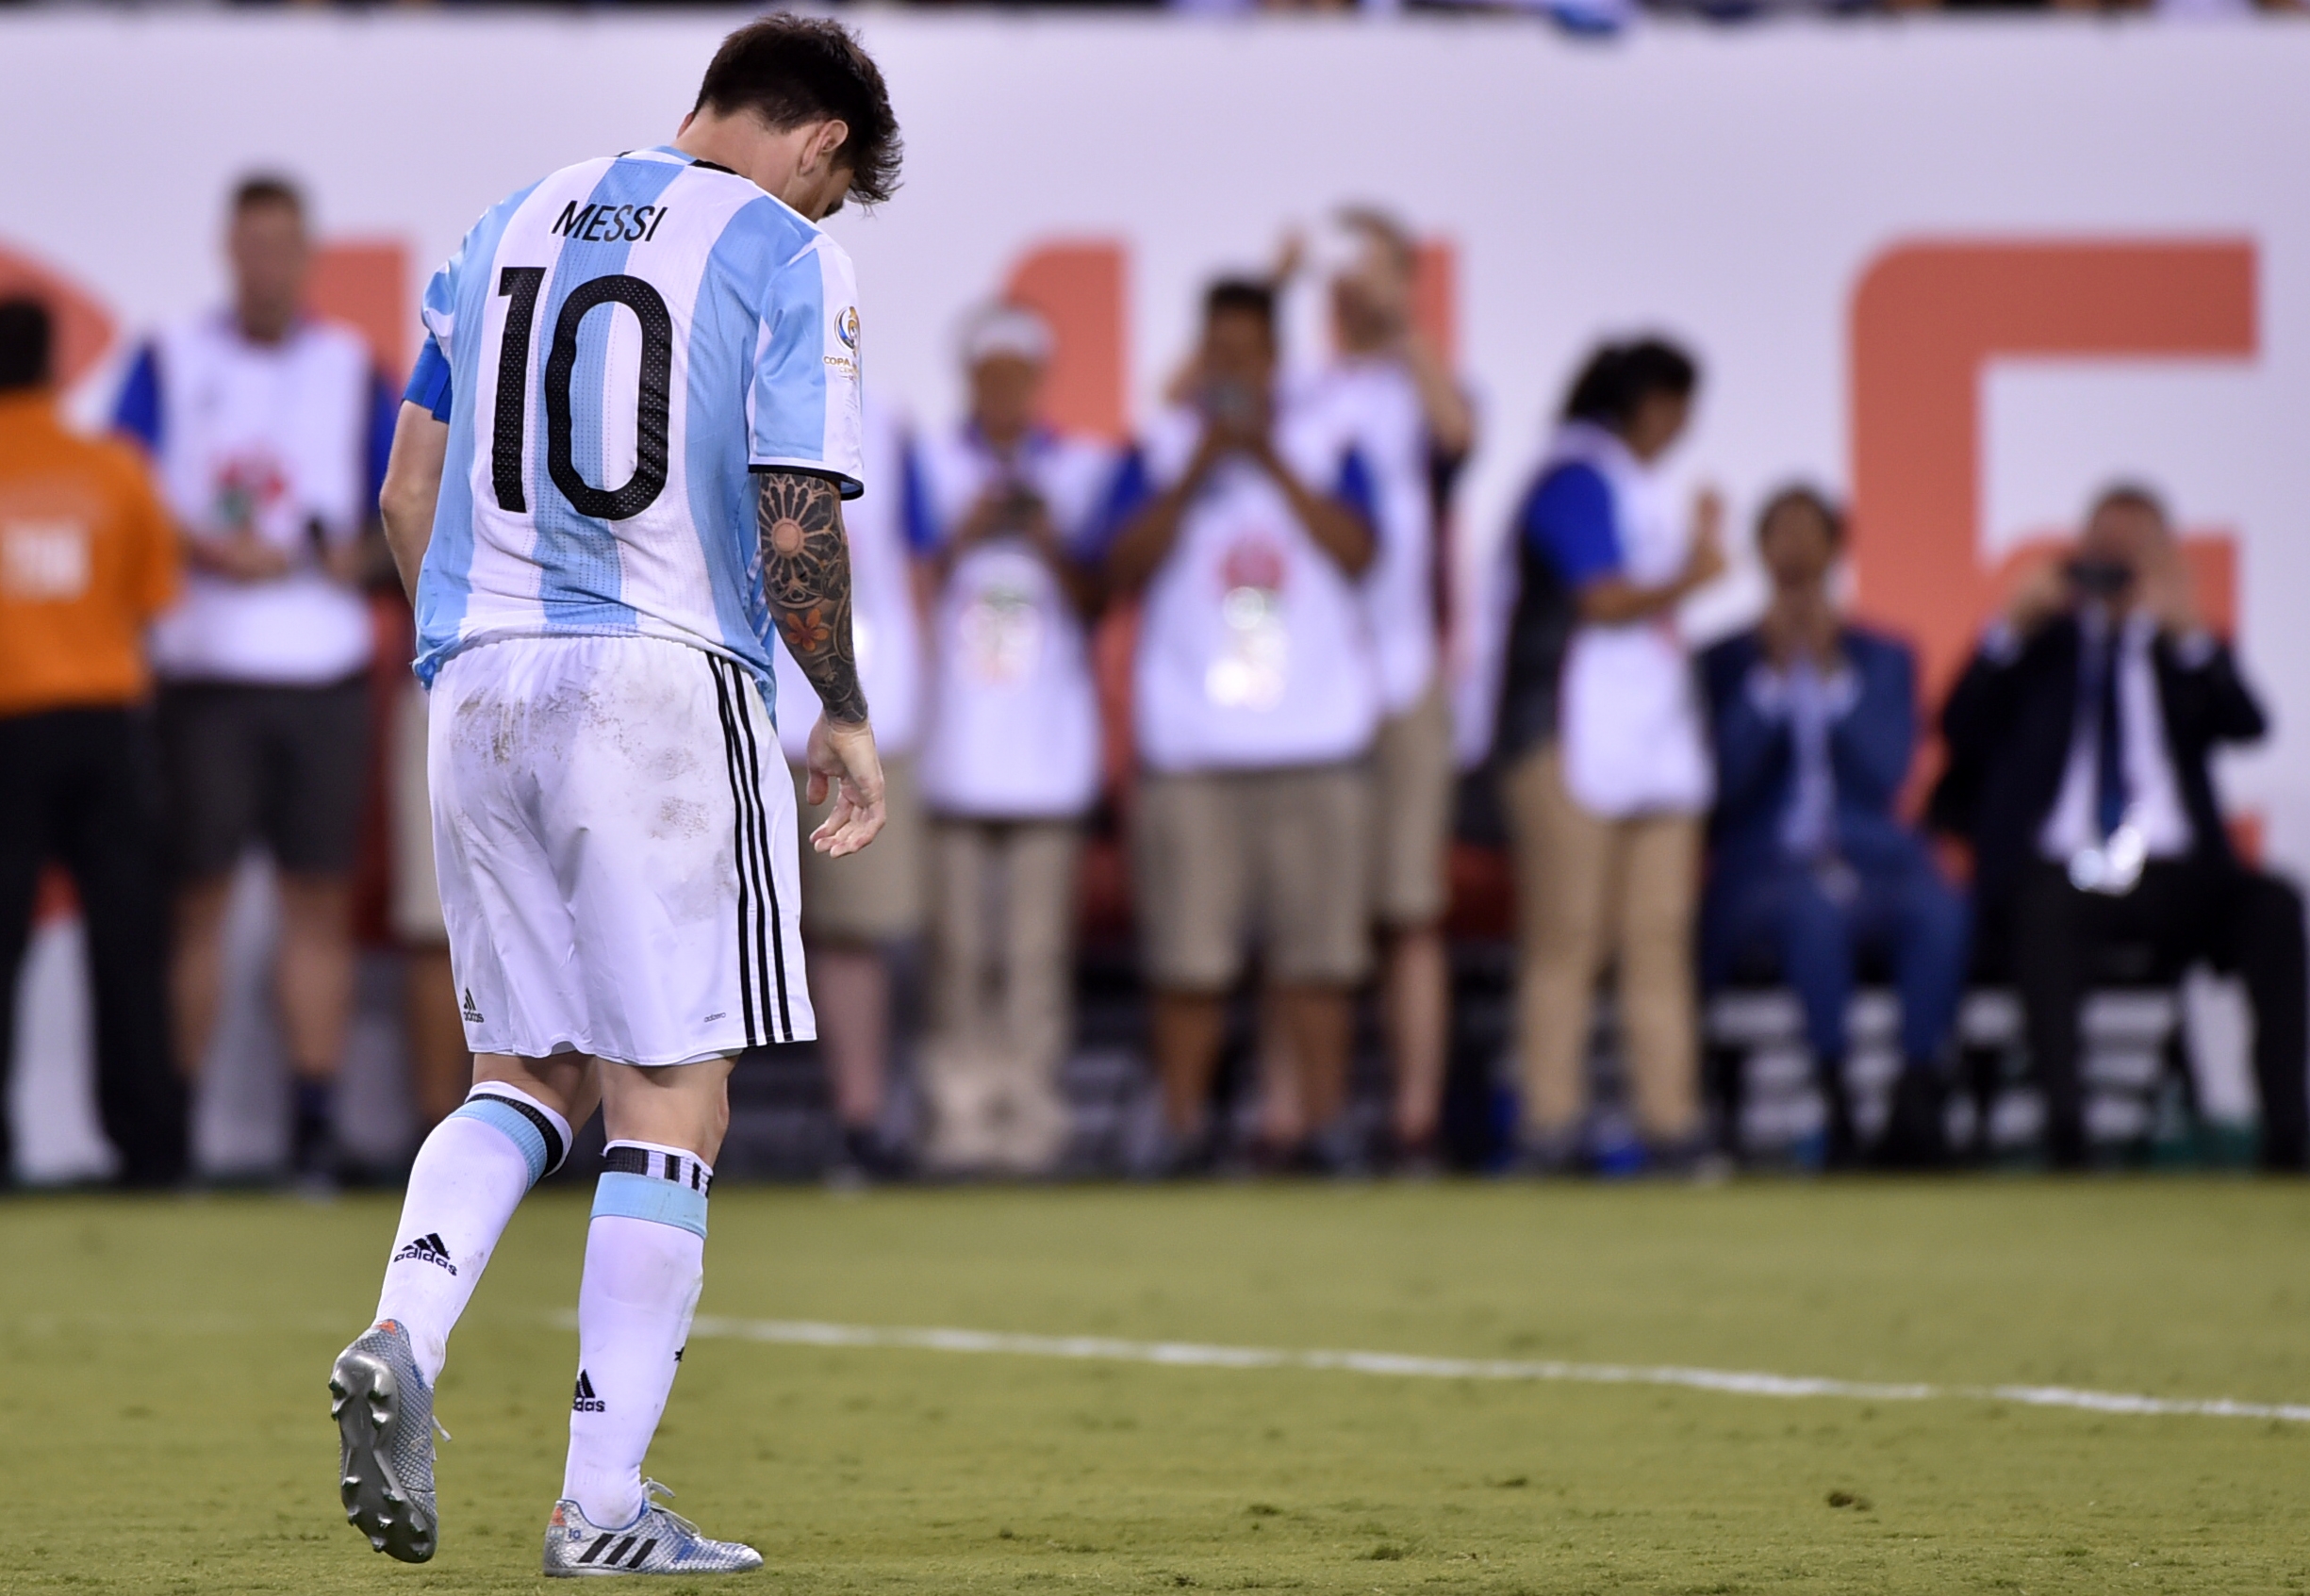  La renuncia de Lionel Messi a la selección provocó conmoción en Argentina